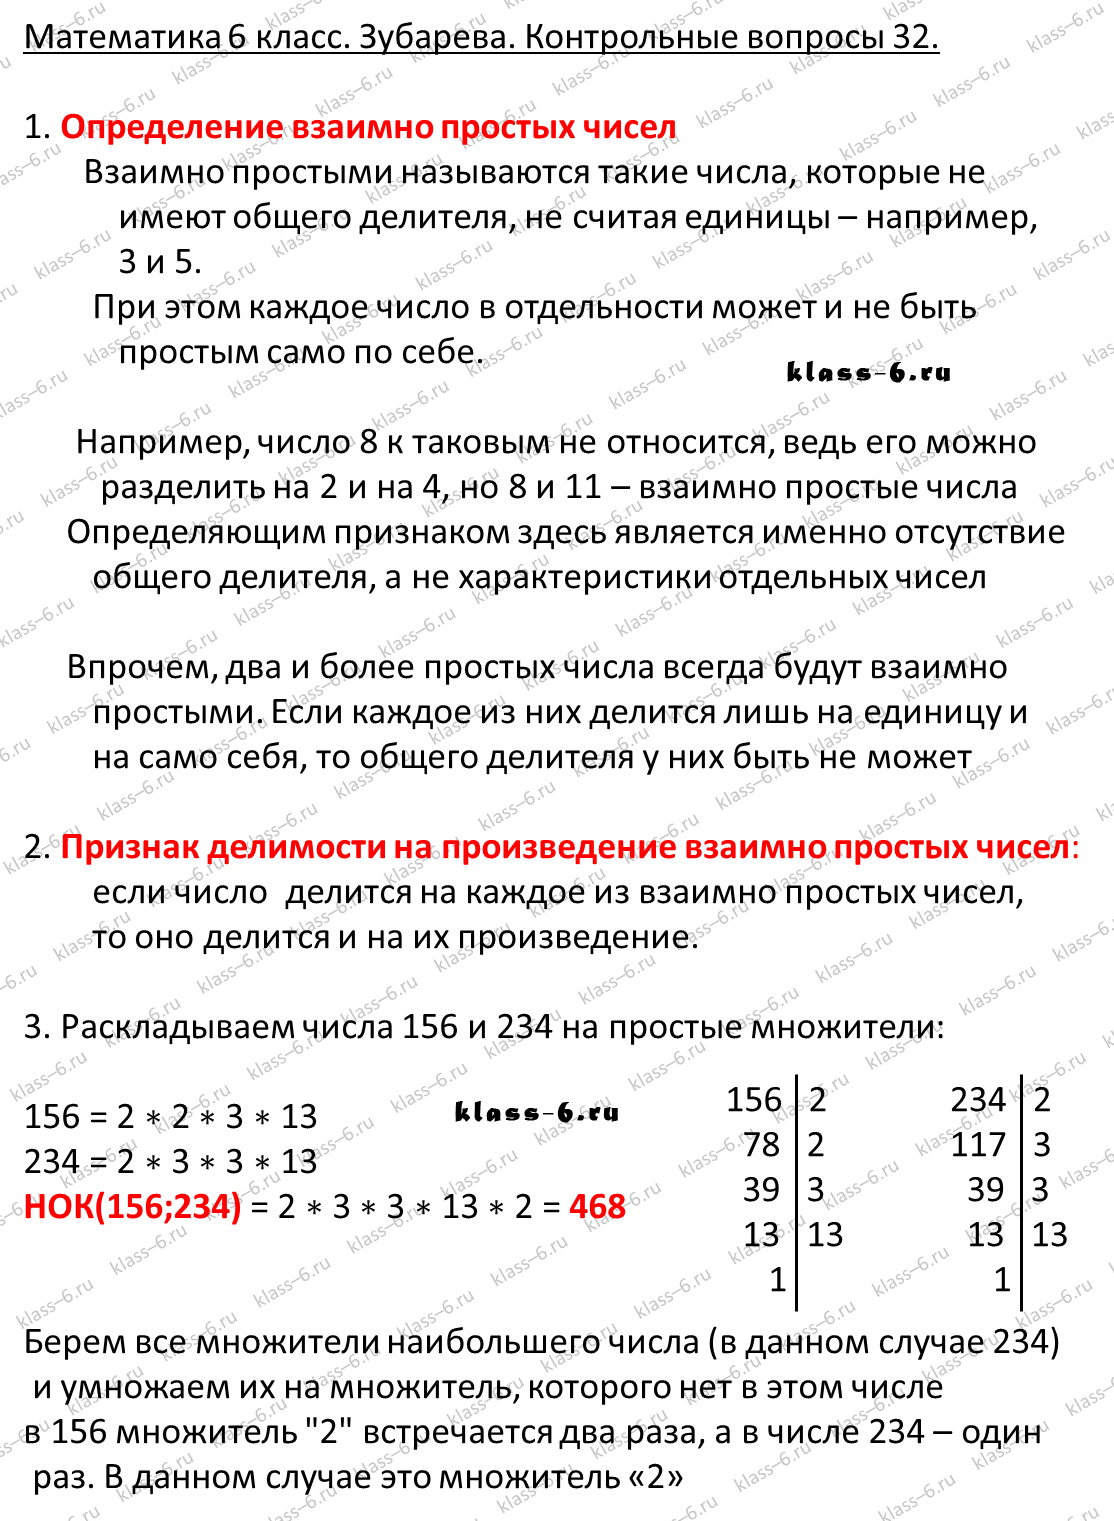 гдз математика Зубарева 6 класс ответ и подробное решение с объяснениями контрольных вопросов к параграфу № 32